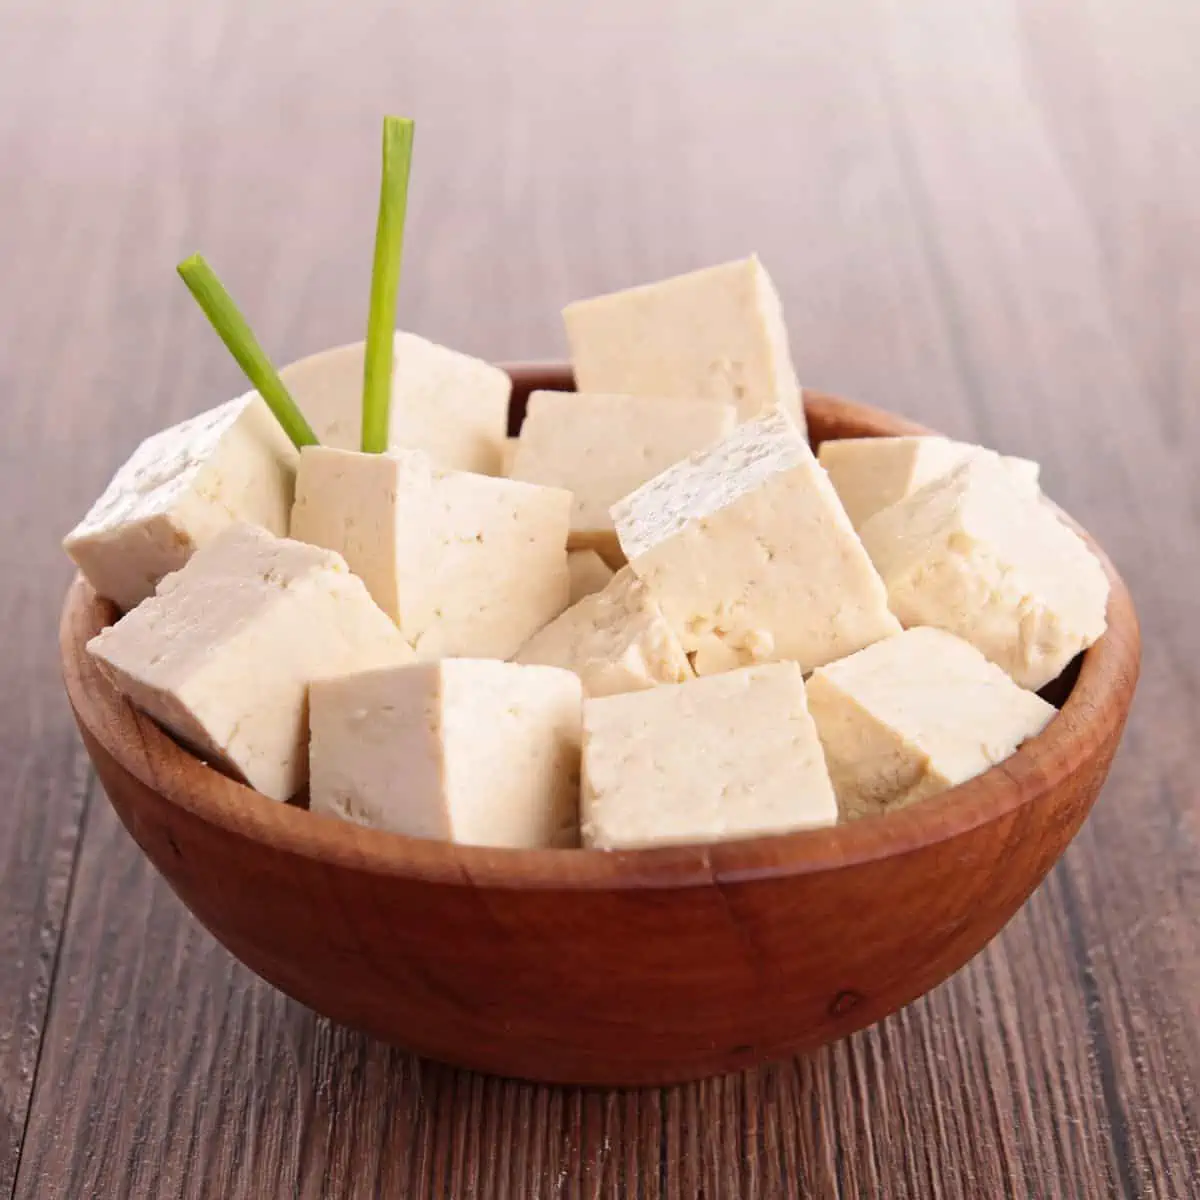 Cubed tofu in wood bowl.
